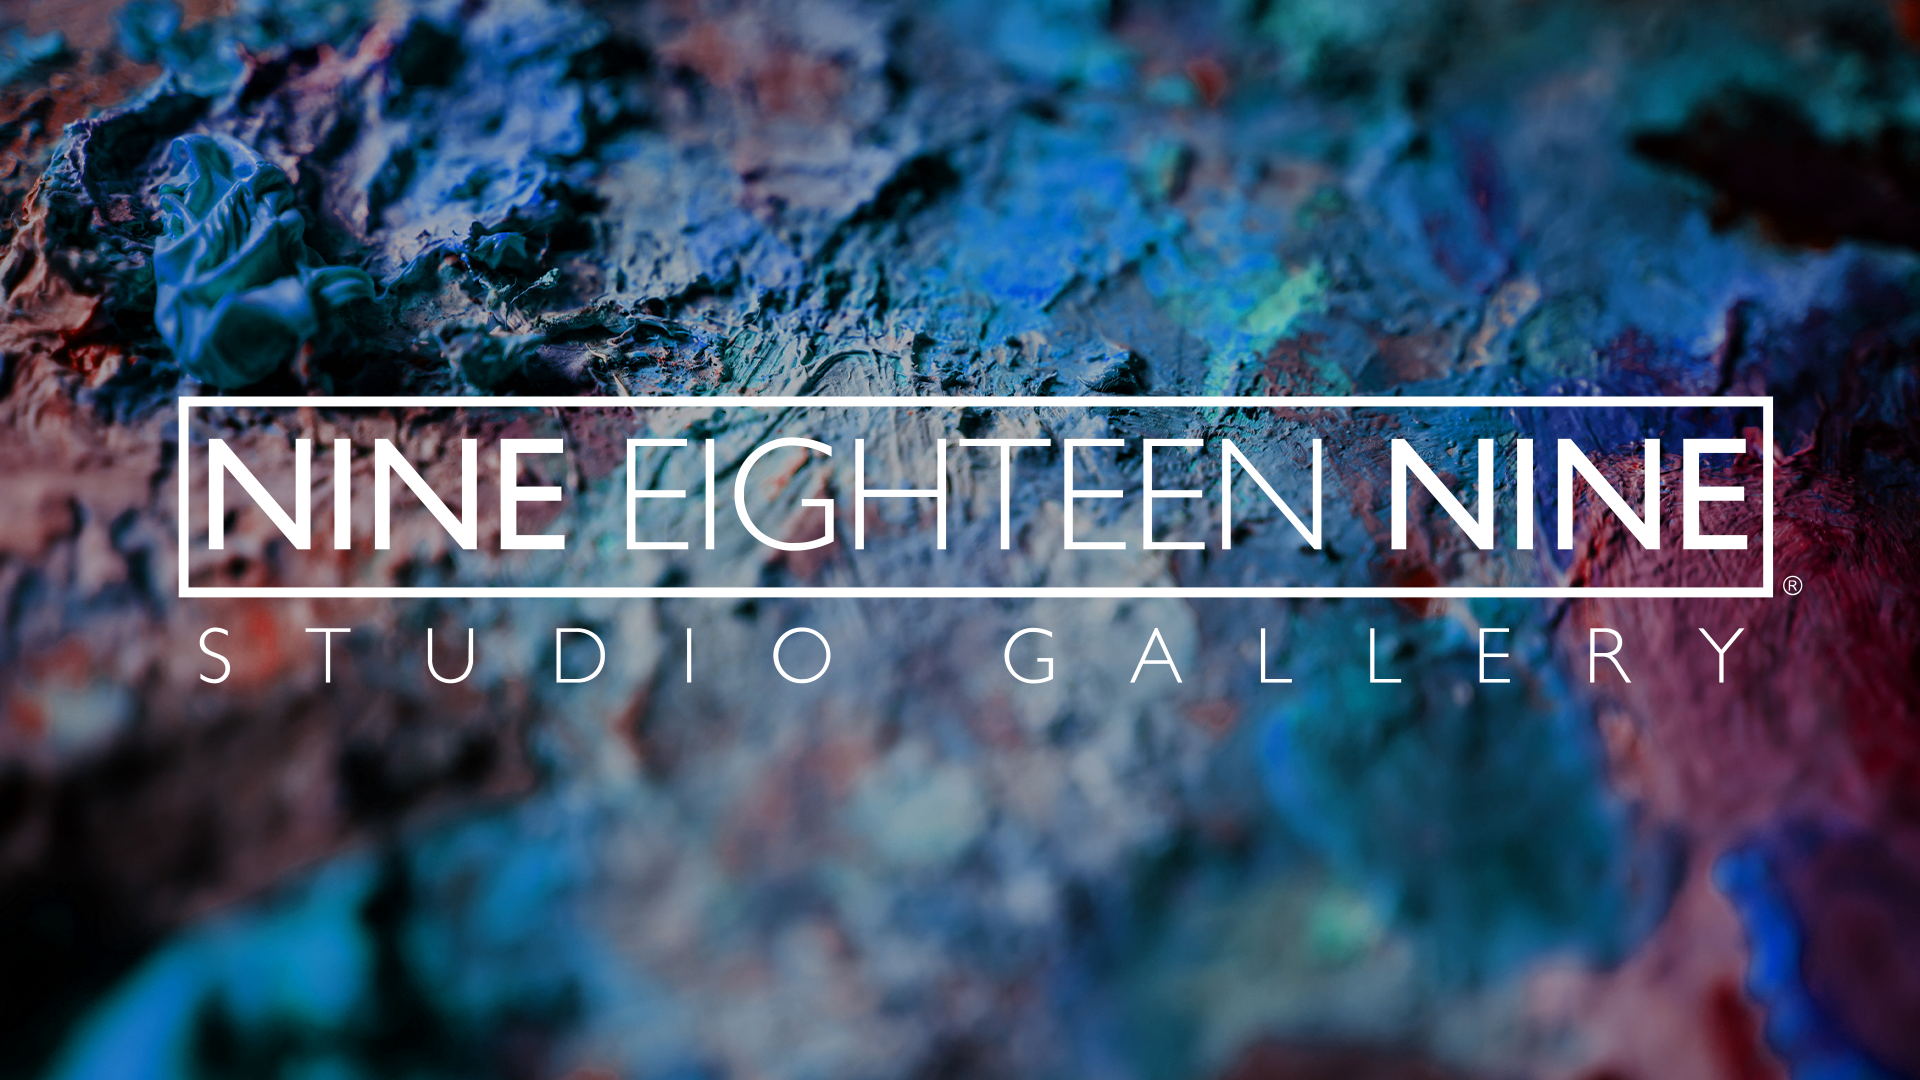 Nine Eighteen Nine Studio Gallery